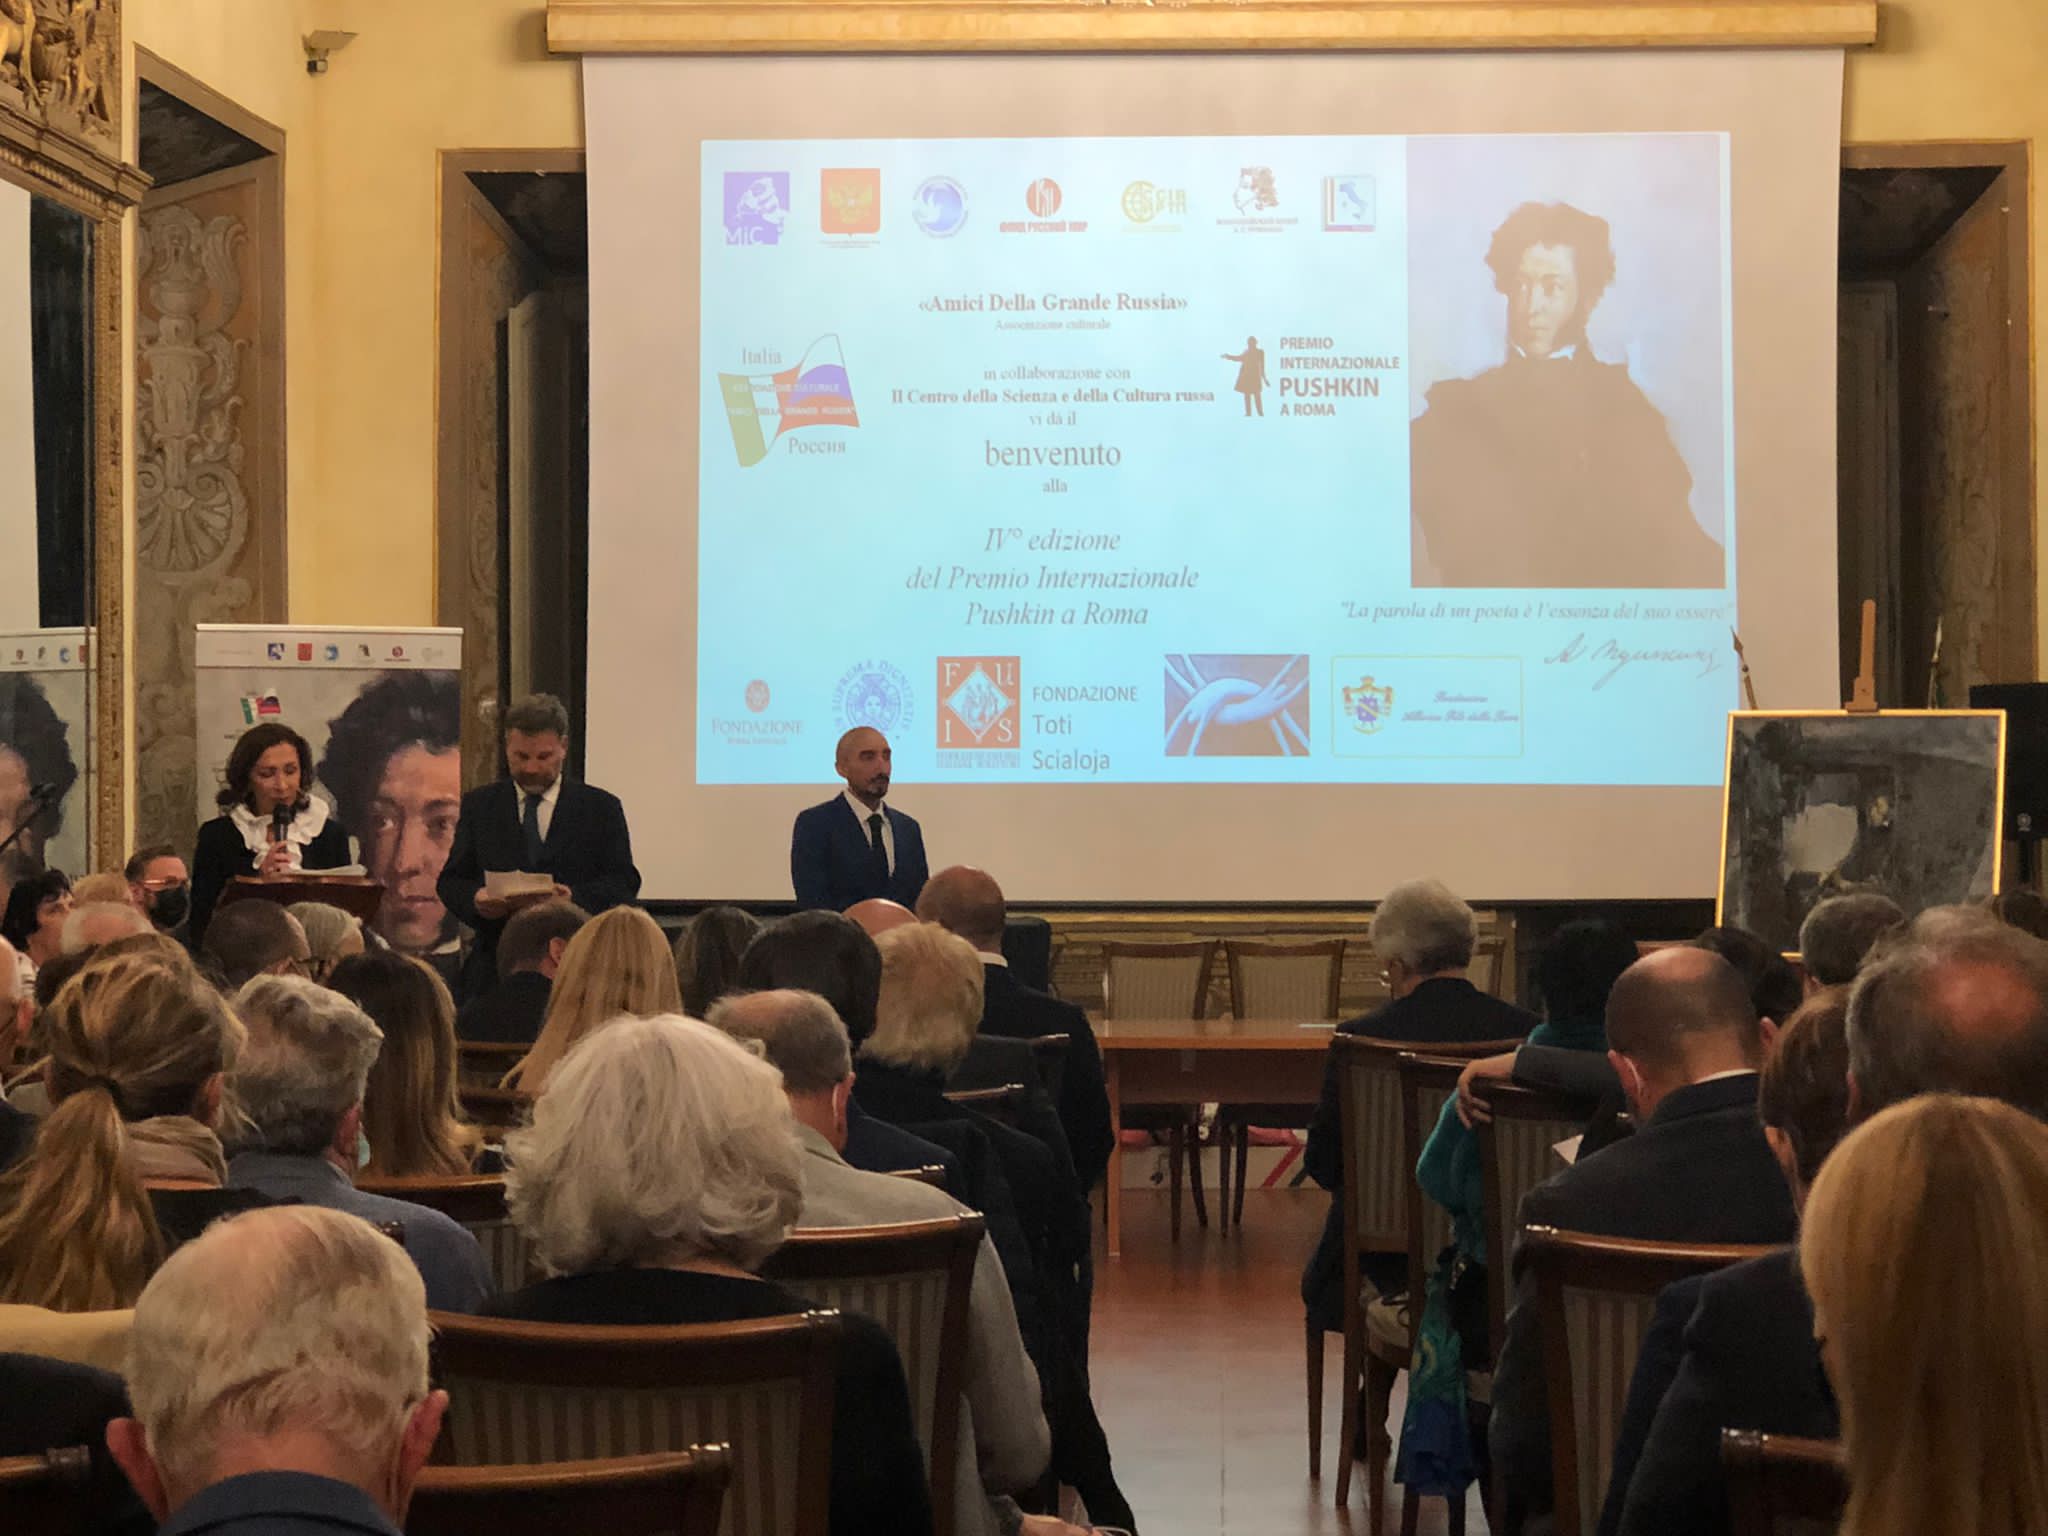 La IV edizione del Premio internazionale Pushkin celebrata a Roma in onore dei 200 anni della nascita di F. M. Dostoevskij